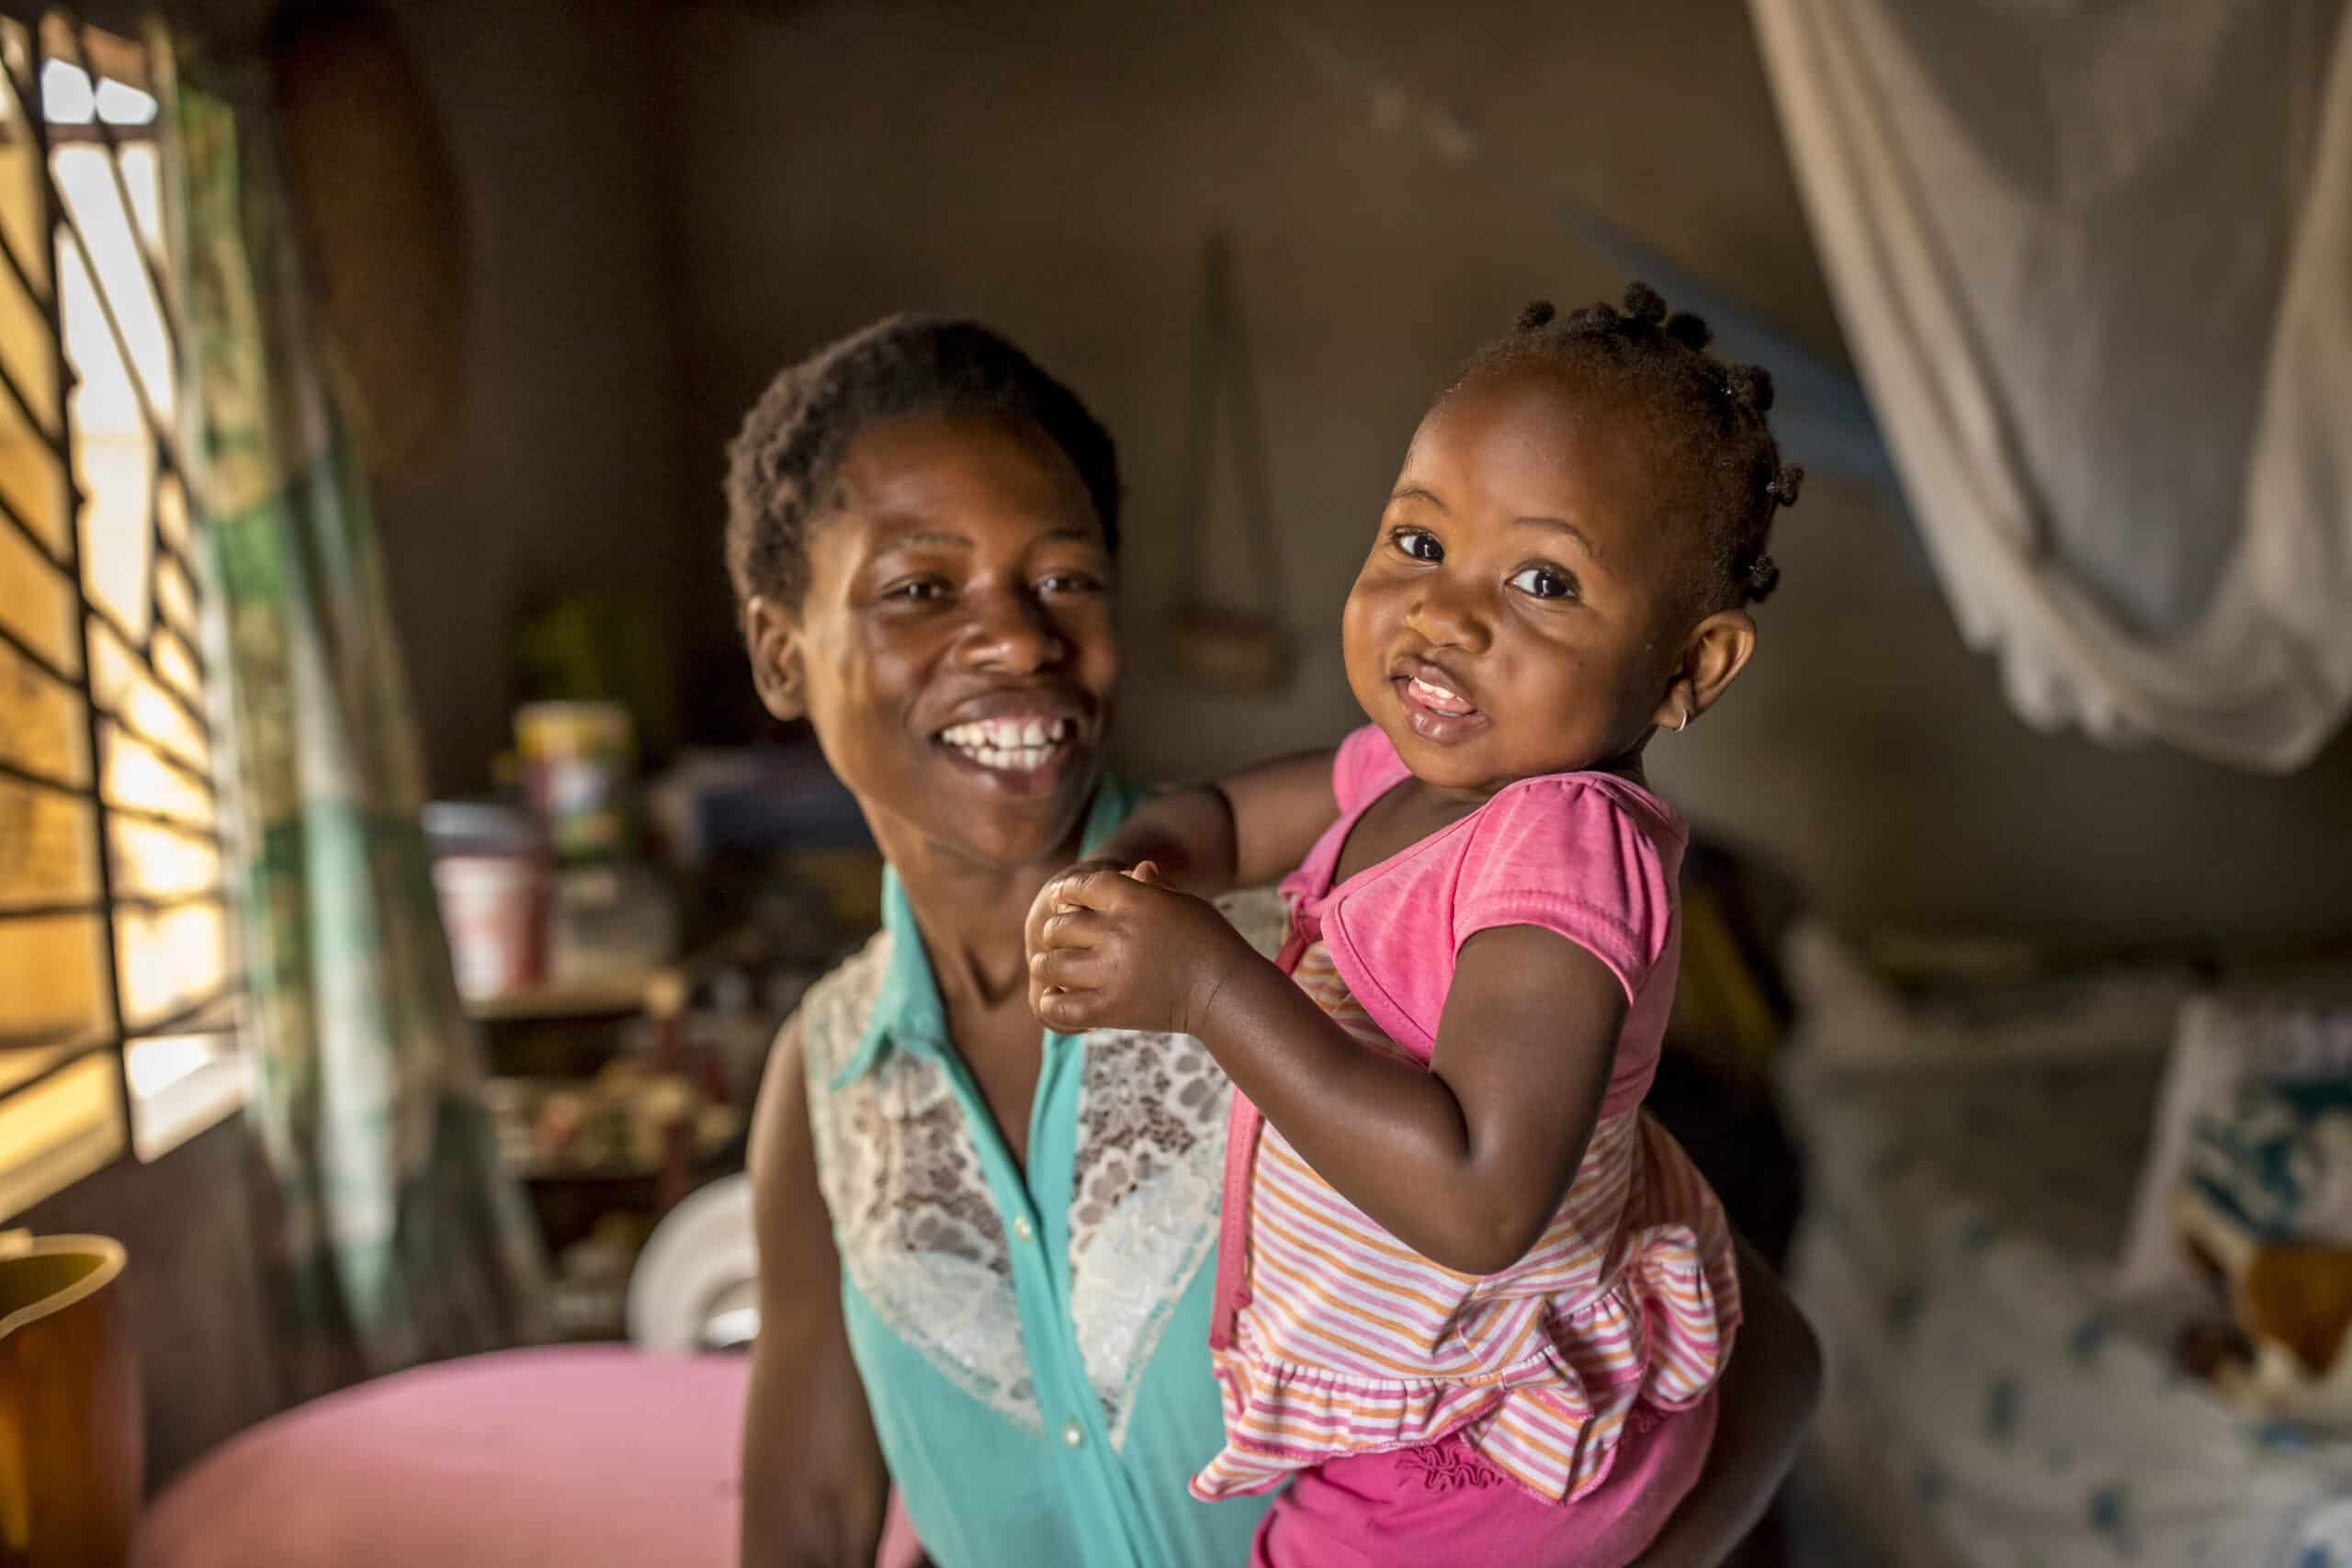 Eine fröhliche Mutter hält ihre kleine Tochter in einem sonnendurchfluteten Raum. Beide lächeln in die Kamera, während durch ein Fenster auf der linken Seite warmes Licht einfällt. © Fotografie Tomas Rodriguez